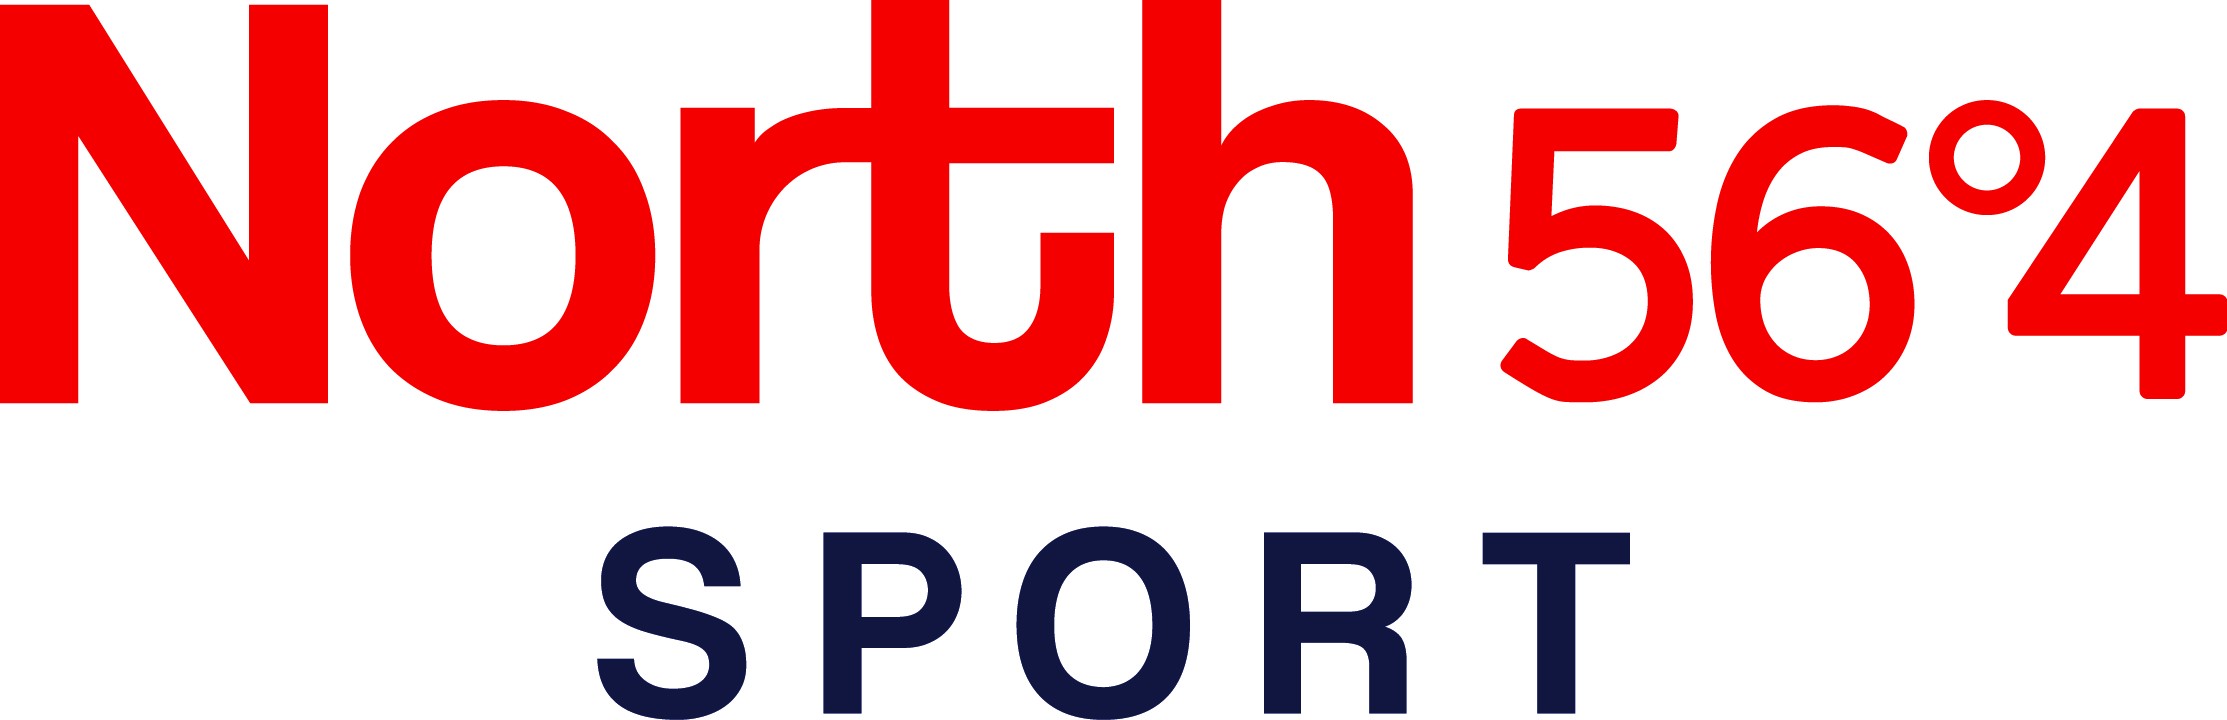 North 56°4 Sport